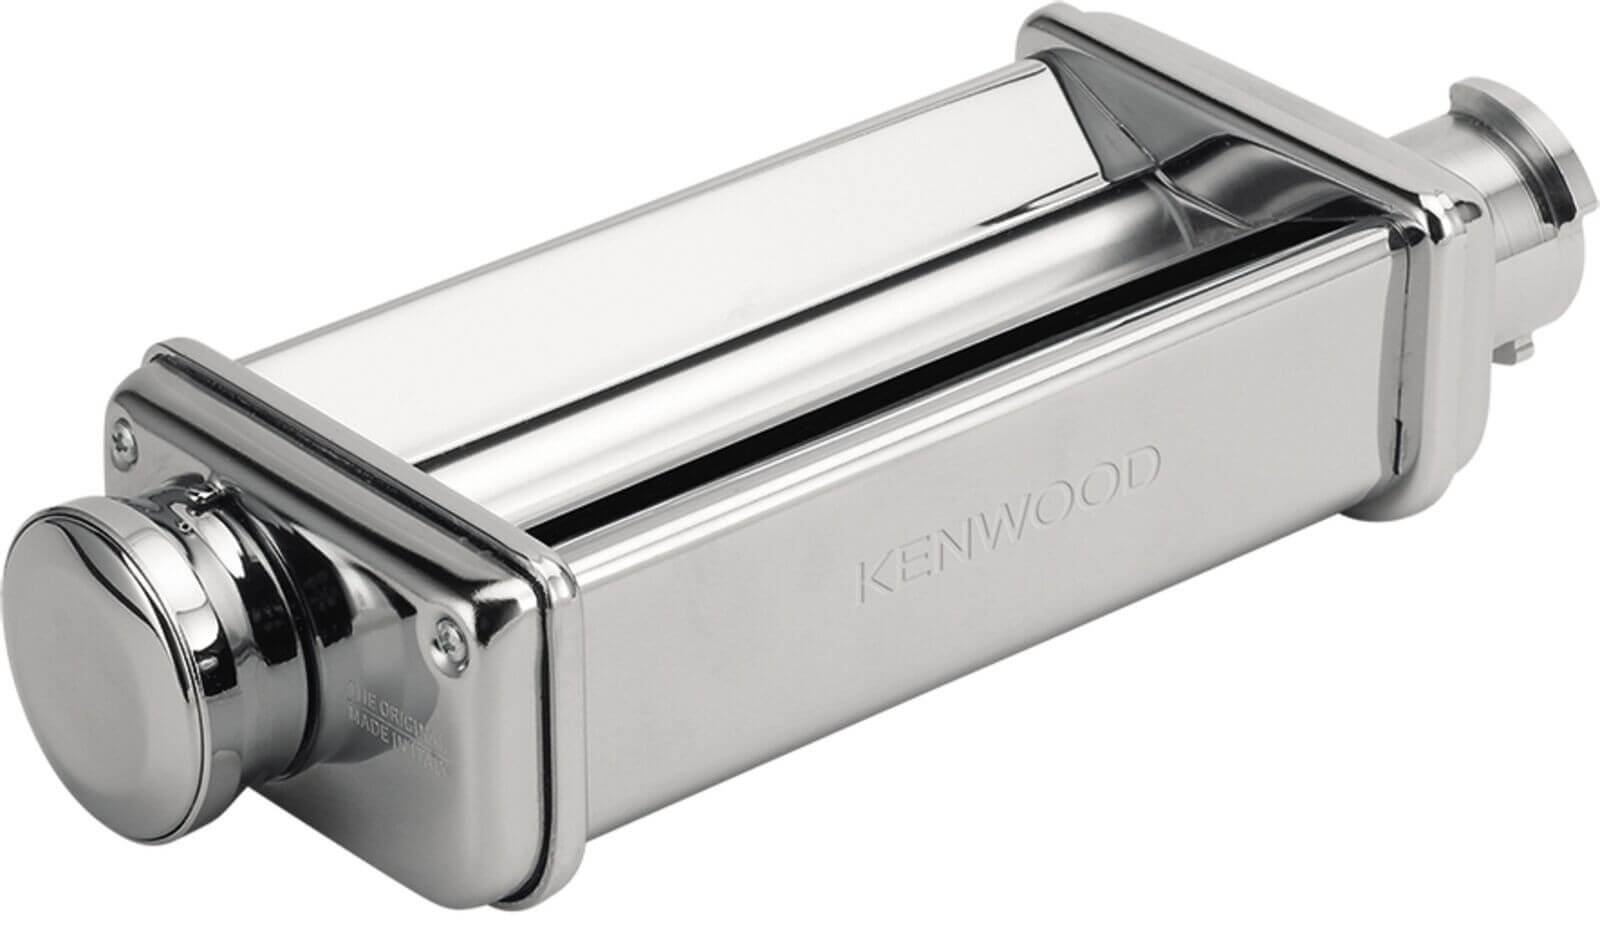 Kenwood - Une fois que vous aurez testé le 𝗹𝗮𝗺𝗶𝗻𝗼𝗶𝗿 𝗫𝗟, vous ne  pourrez clairement plus vous en passer ! A vous les lasagnes maison, les  pâtes à tarte, les ravioles, les